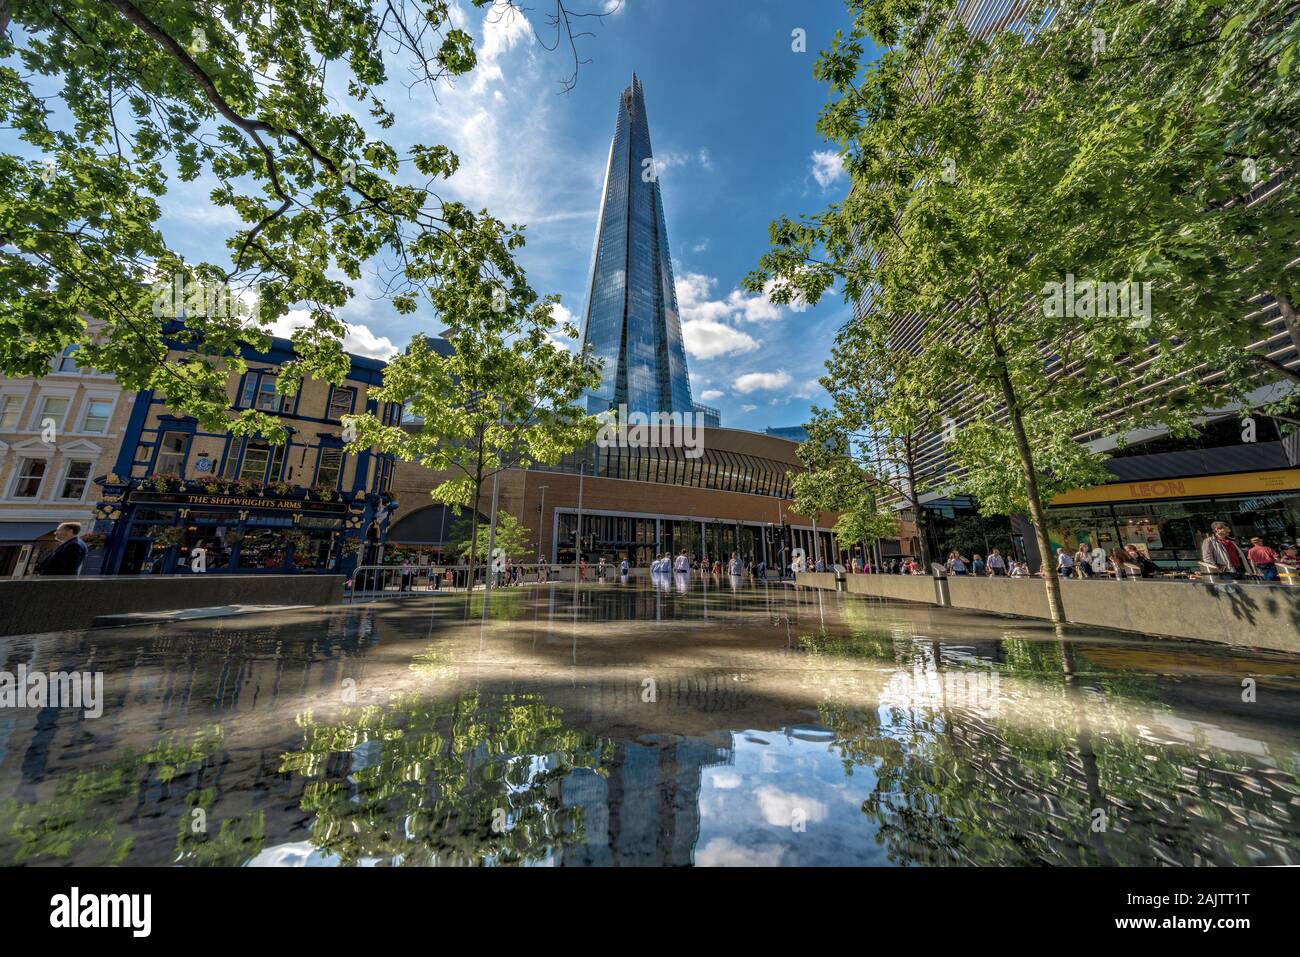 LONDON, Regno Unito - 22 agosto: Bassa vista prospettica del grattacielo Shard edificio, un famoso punto di riferimento nella città di Londra il 22 agosto, 2019 Foto Stock